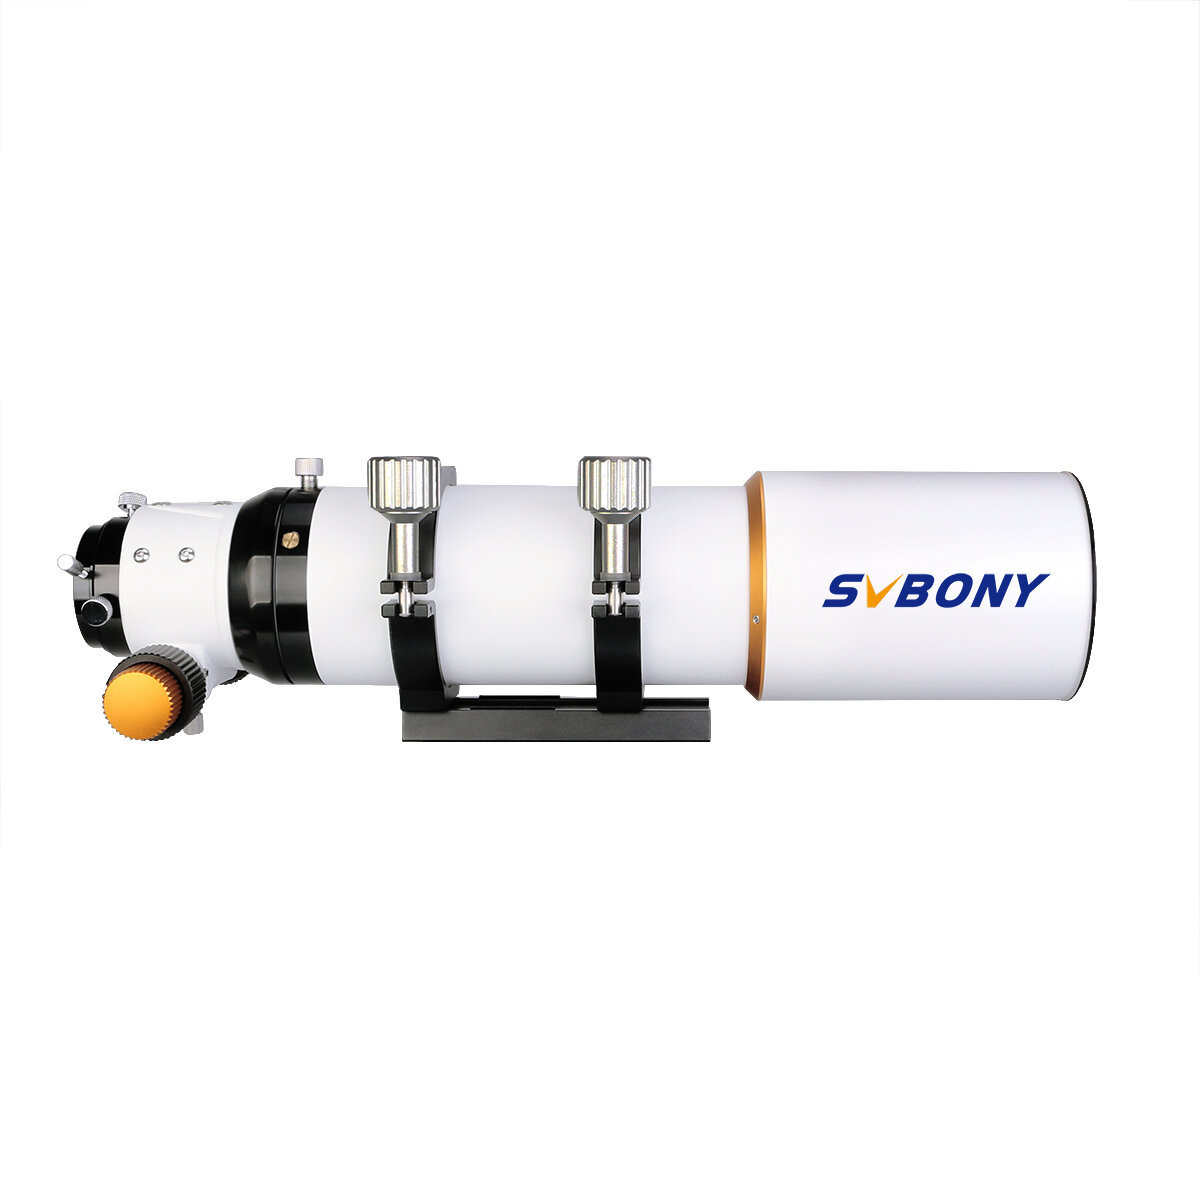 Tubo refrator SVBONY SV503 80ED F7 OTA com focador de dupla velocidade de 2 polegadas para telescópio astronômico ao ar livre